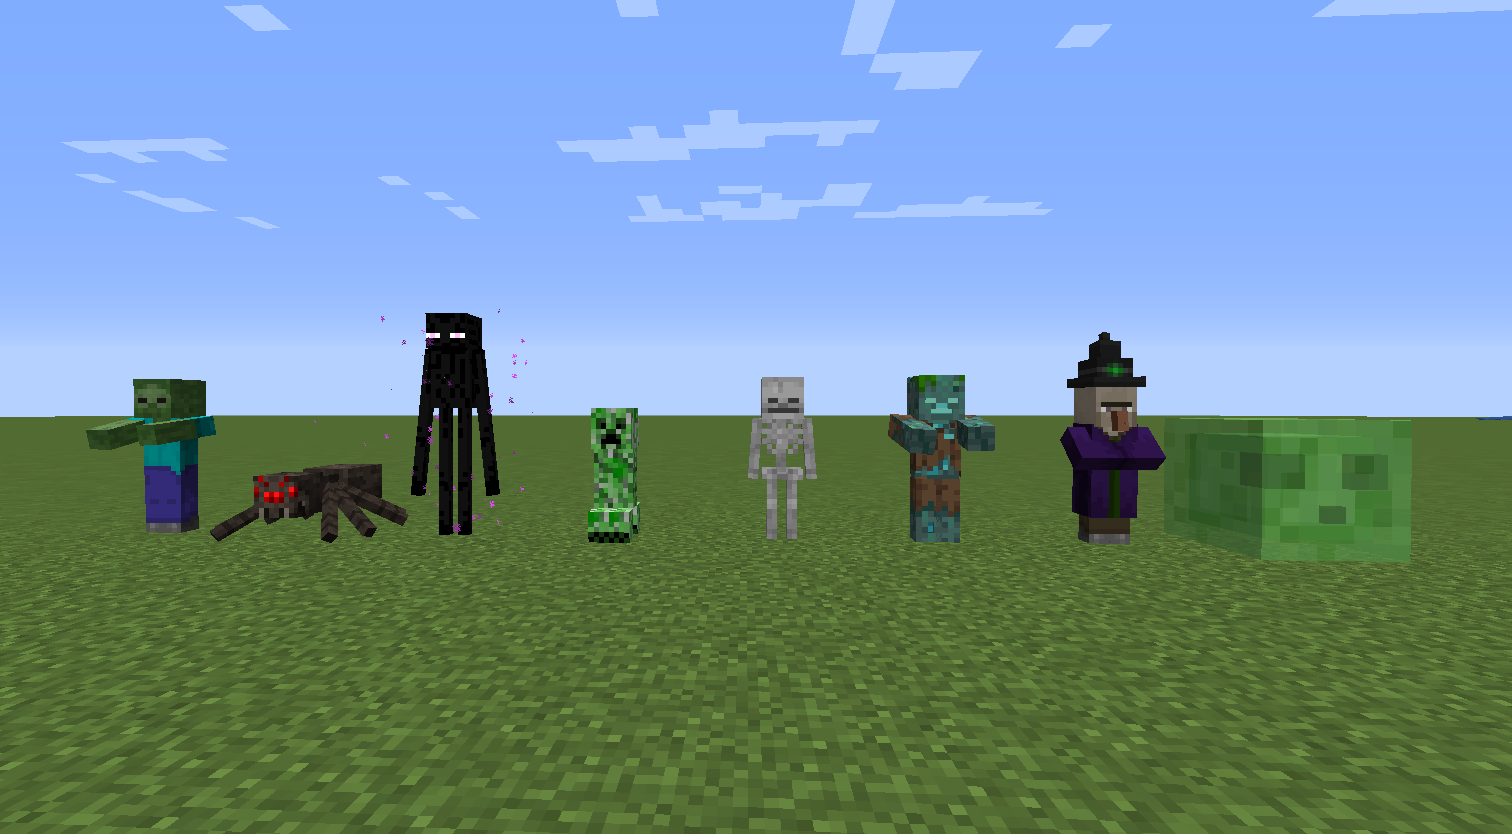 Eu Fiz Todos os Monstros Coloridos no Minecraft! 